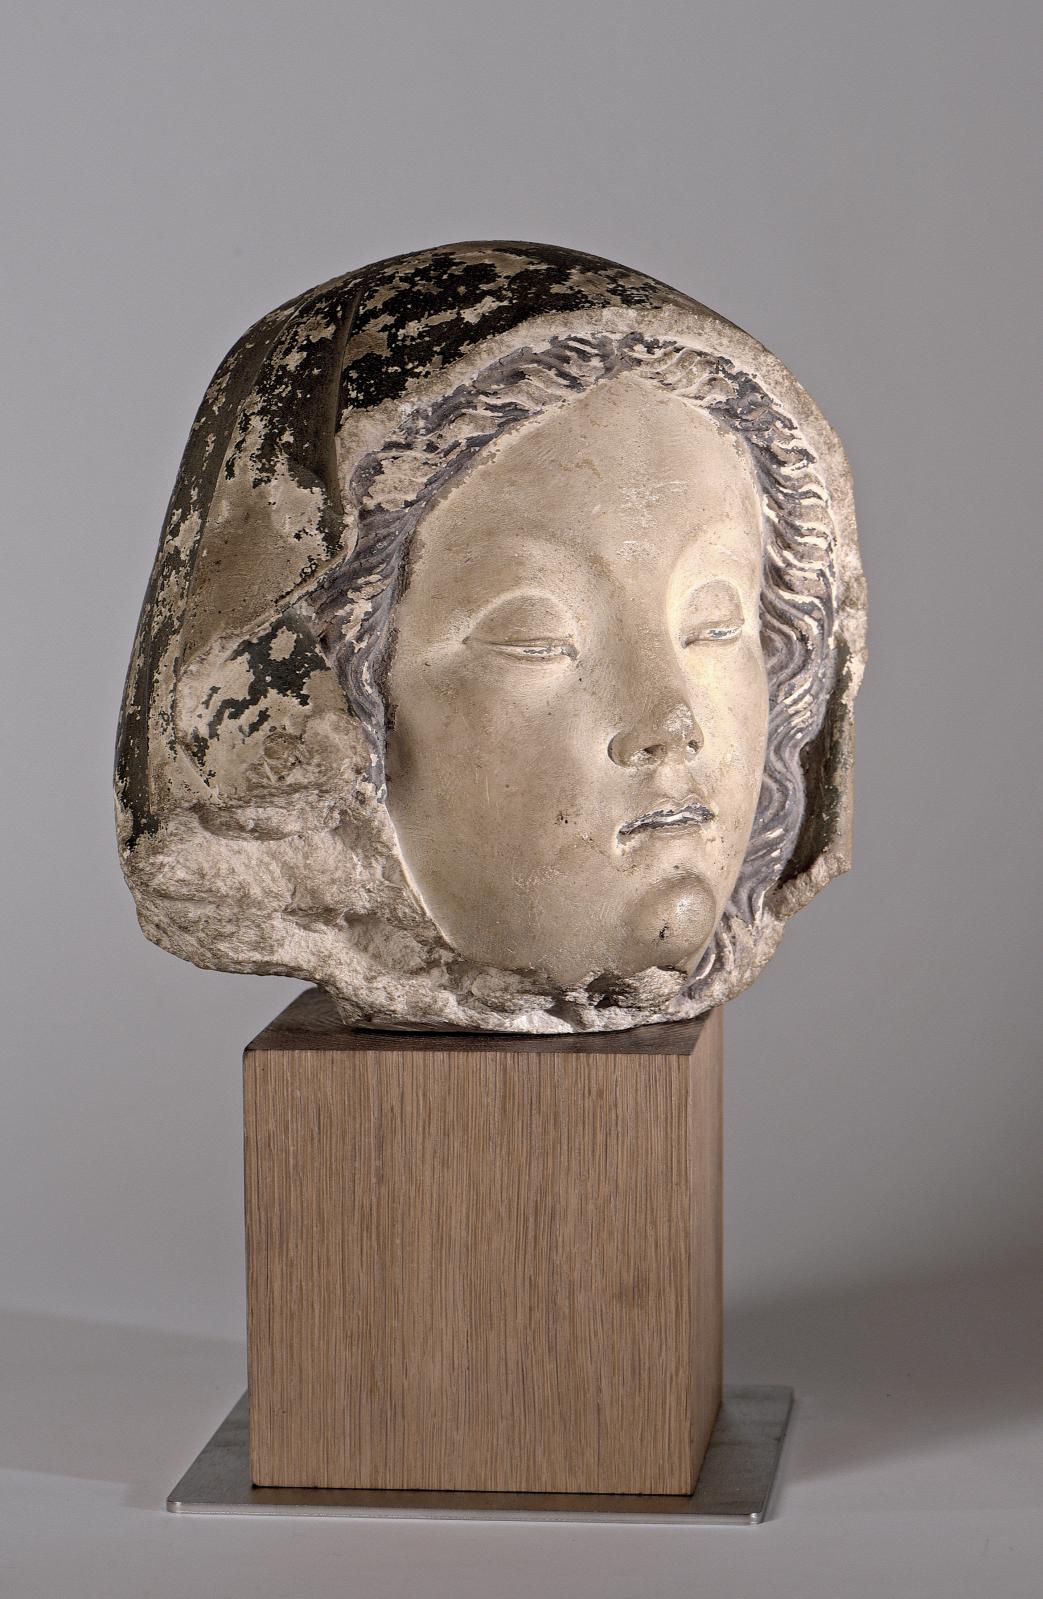 France, Albi, 1490-1500, Tête de Vierge, pierre calcaire, traces de polychromie, h. 21 cm. Adjugé : 31 700 €